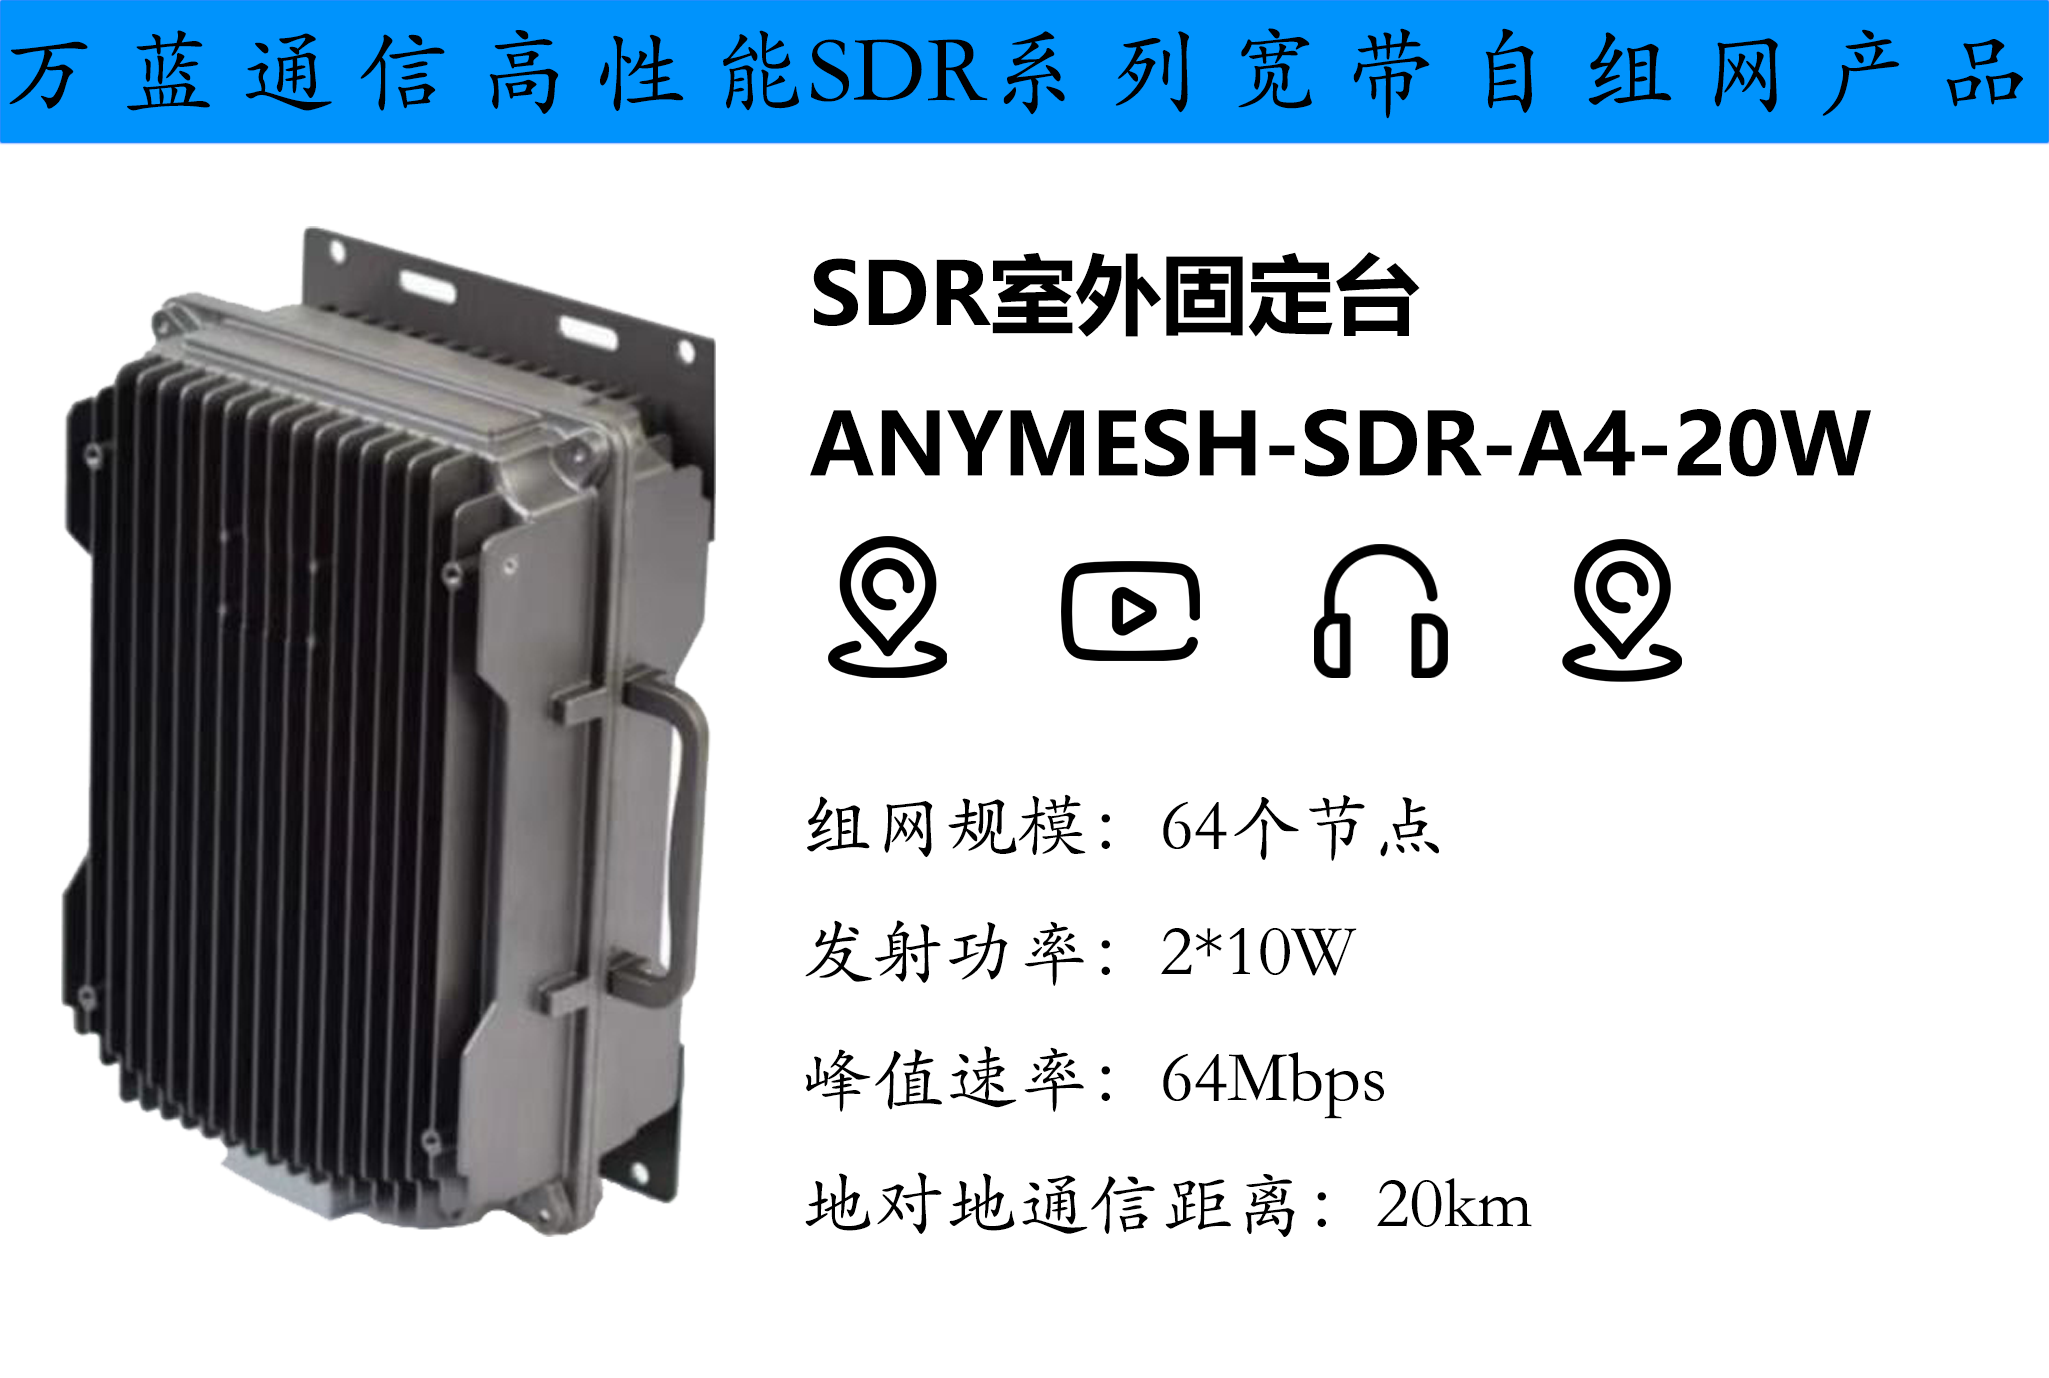 ANYMESH-SDR-A4-20W室外基站型自组网设备 自组